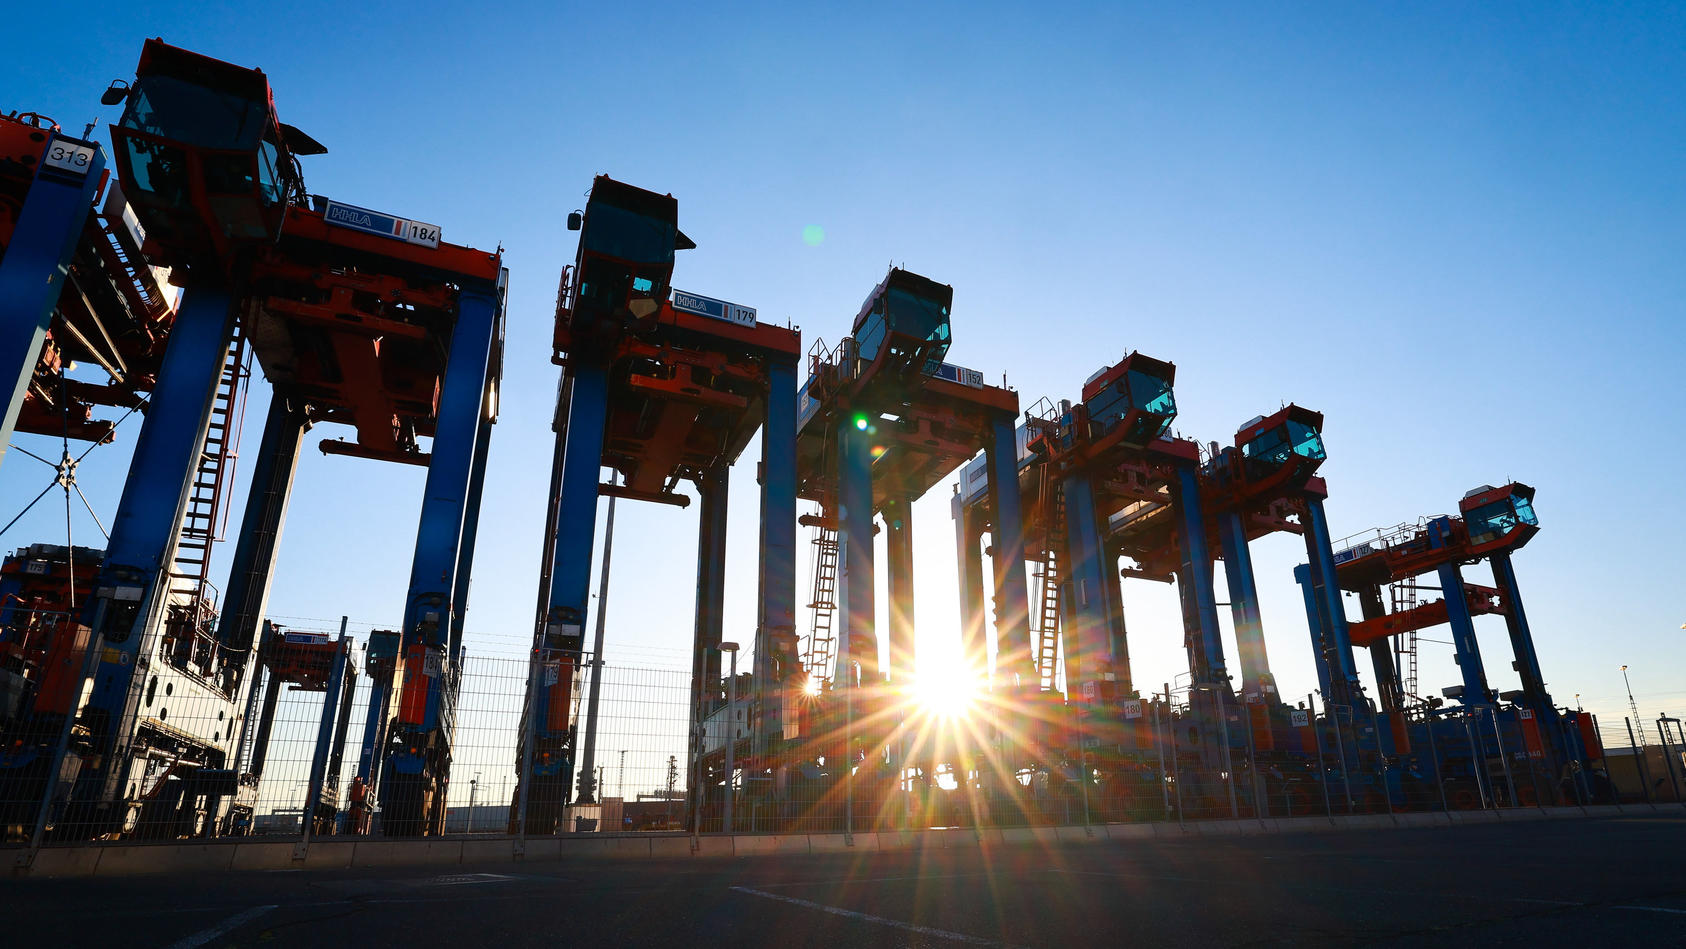 ARCHIV - 14.07.2022, Hamburg: Van Carrier (VC), Spezialfahrzeuge für den Containerumschlag, stehen auf dem Gelände des Container Terminal Burchardkai (CTA) der HHLA (Hamburger Hafen und Logistik AG). Die deutsche Wirtschaft wird nach Einschätzung vie